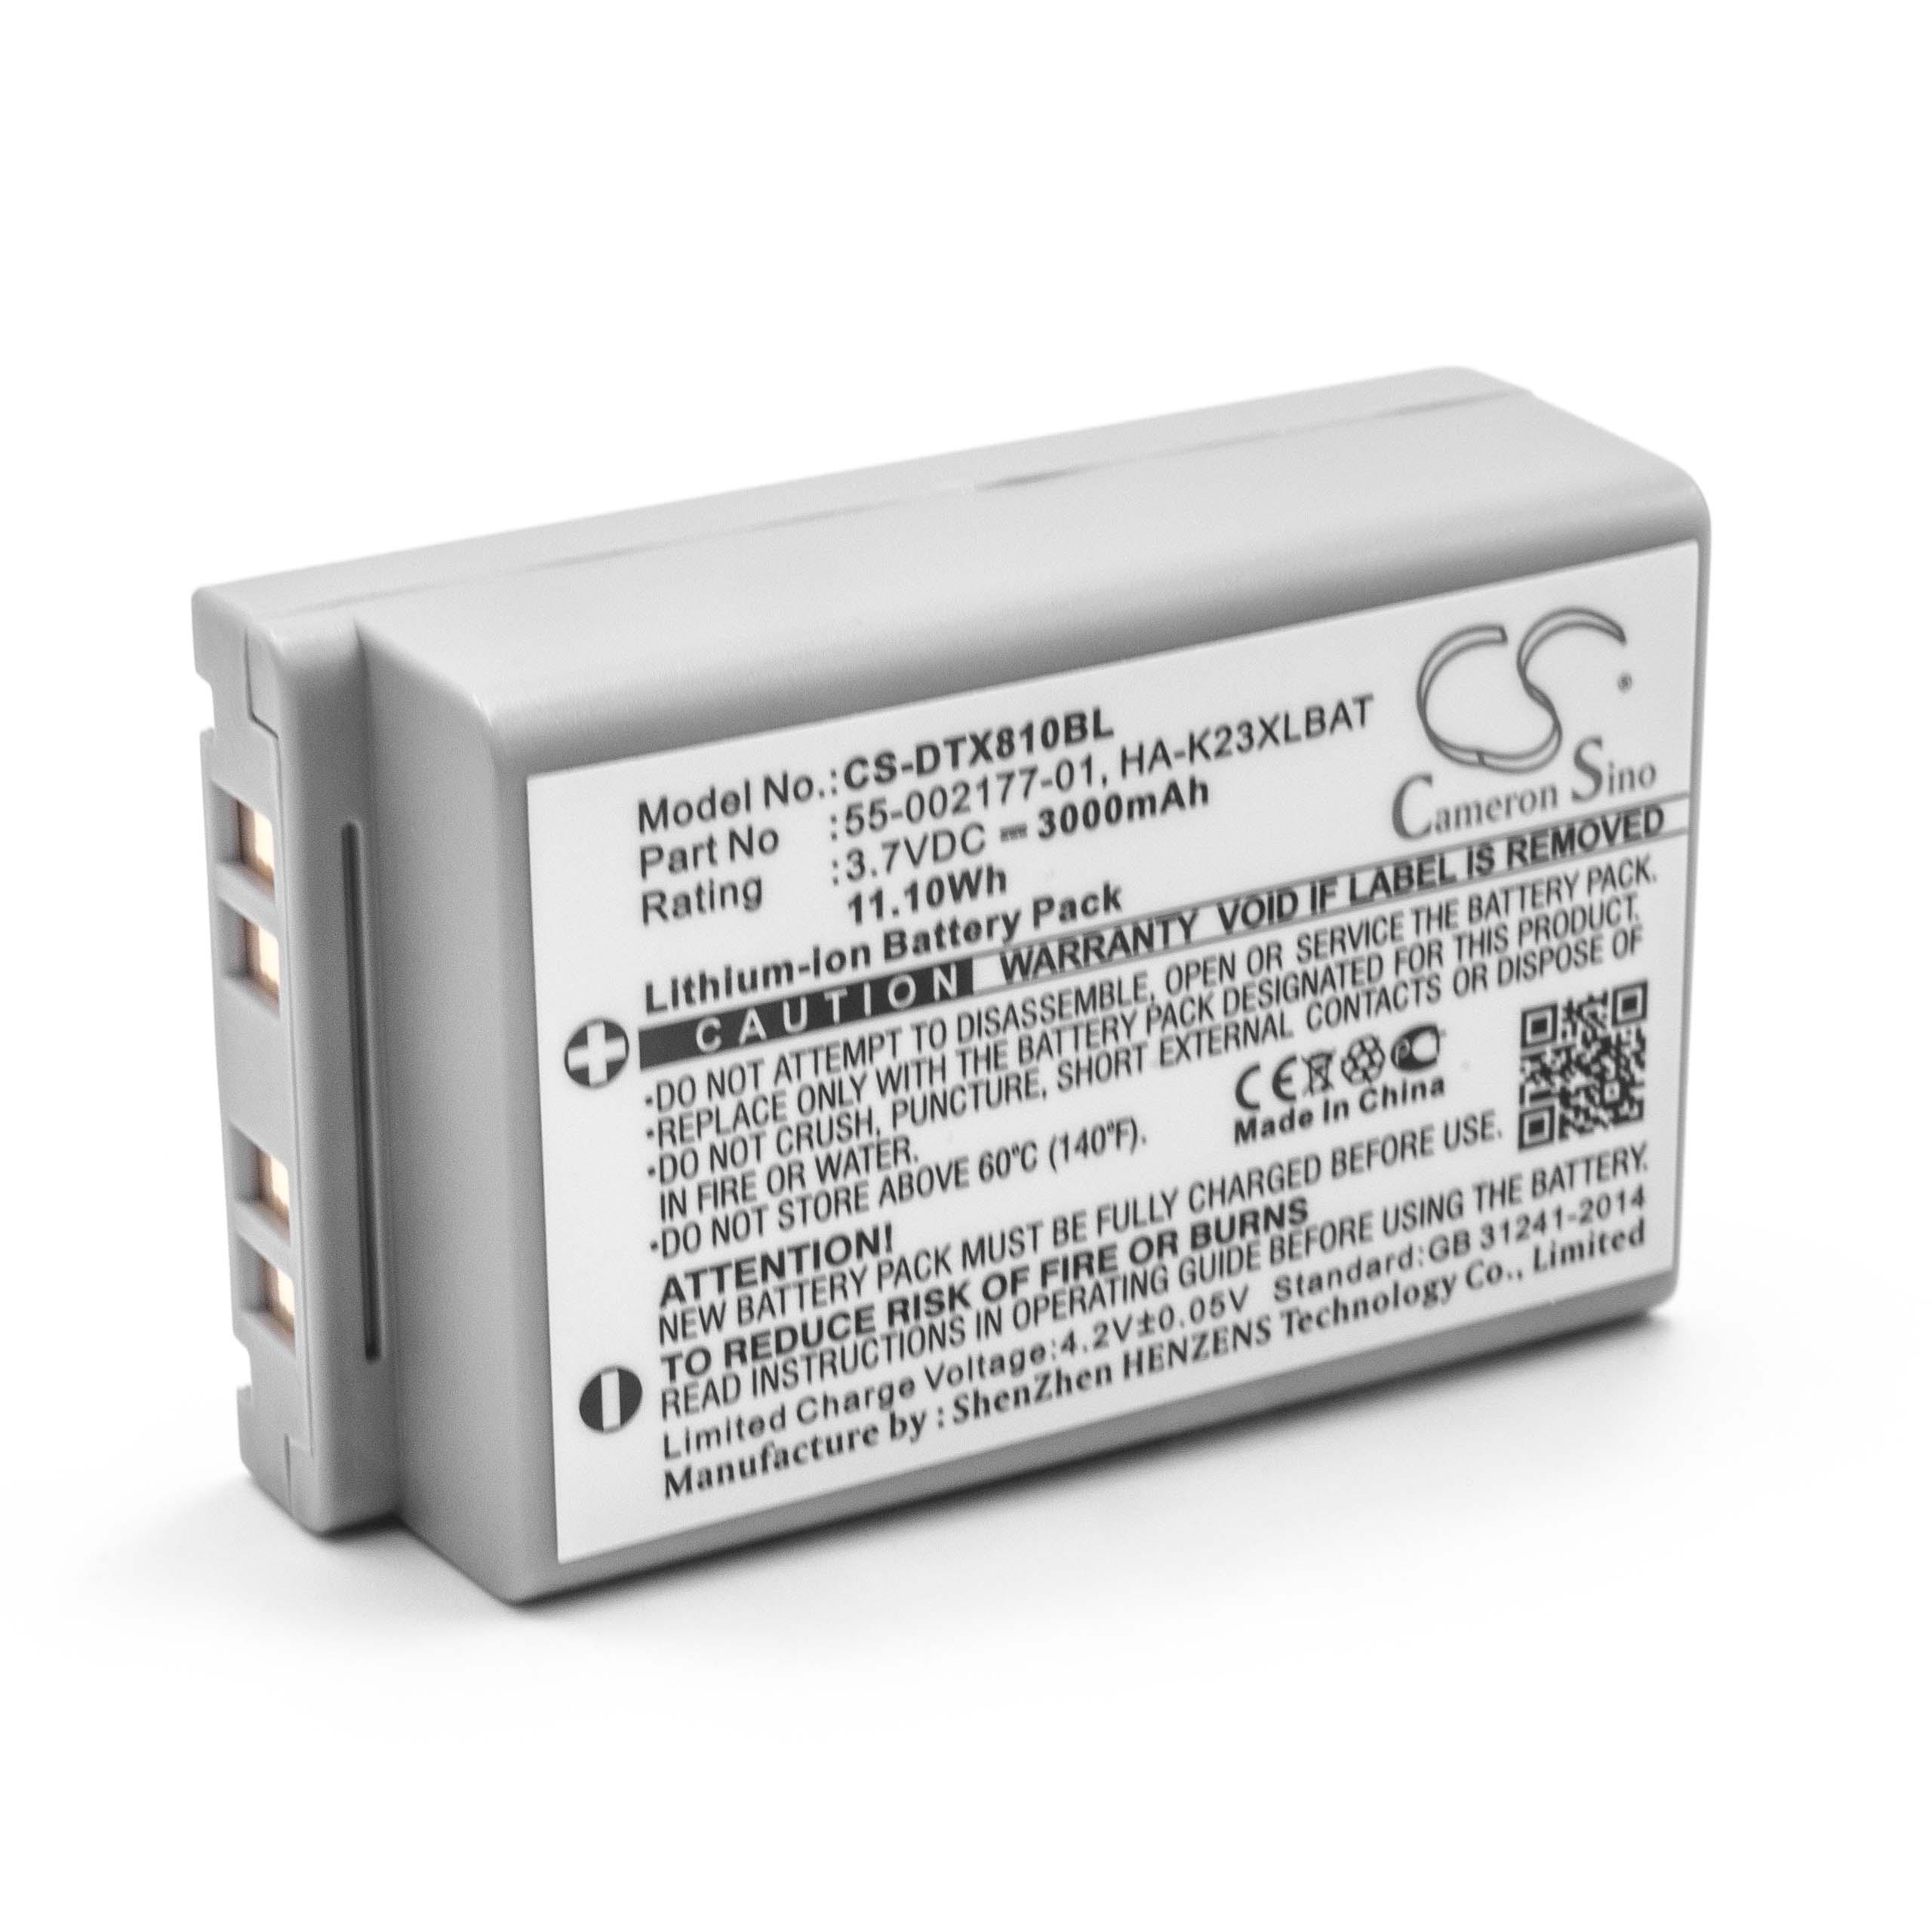 Akumulator do czytnika kodów kreskowych zamiennik Casio HA-K23XLBAT, 55-002177-01 - 3000 mAh 3,7 V Li-Ion